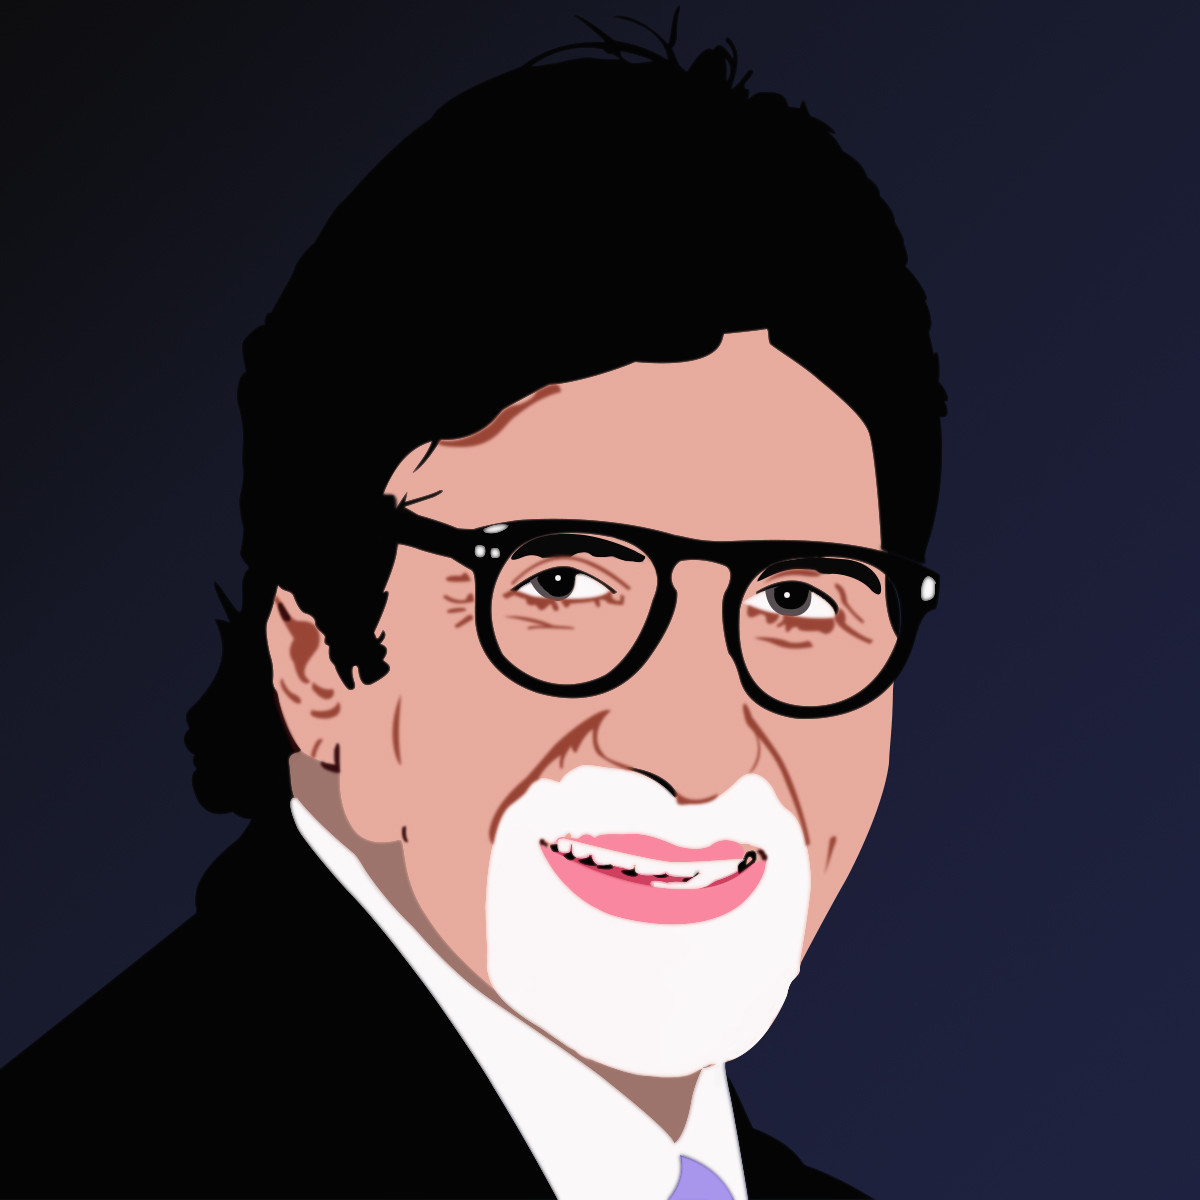 ArtStation - Cartoon effect portrait - Amitabh Bachchan